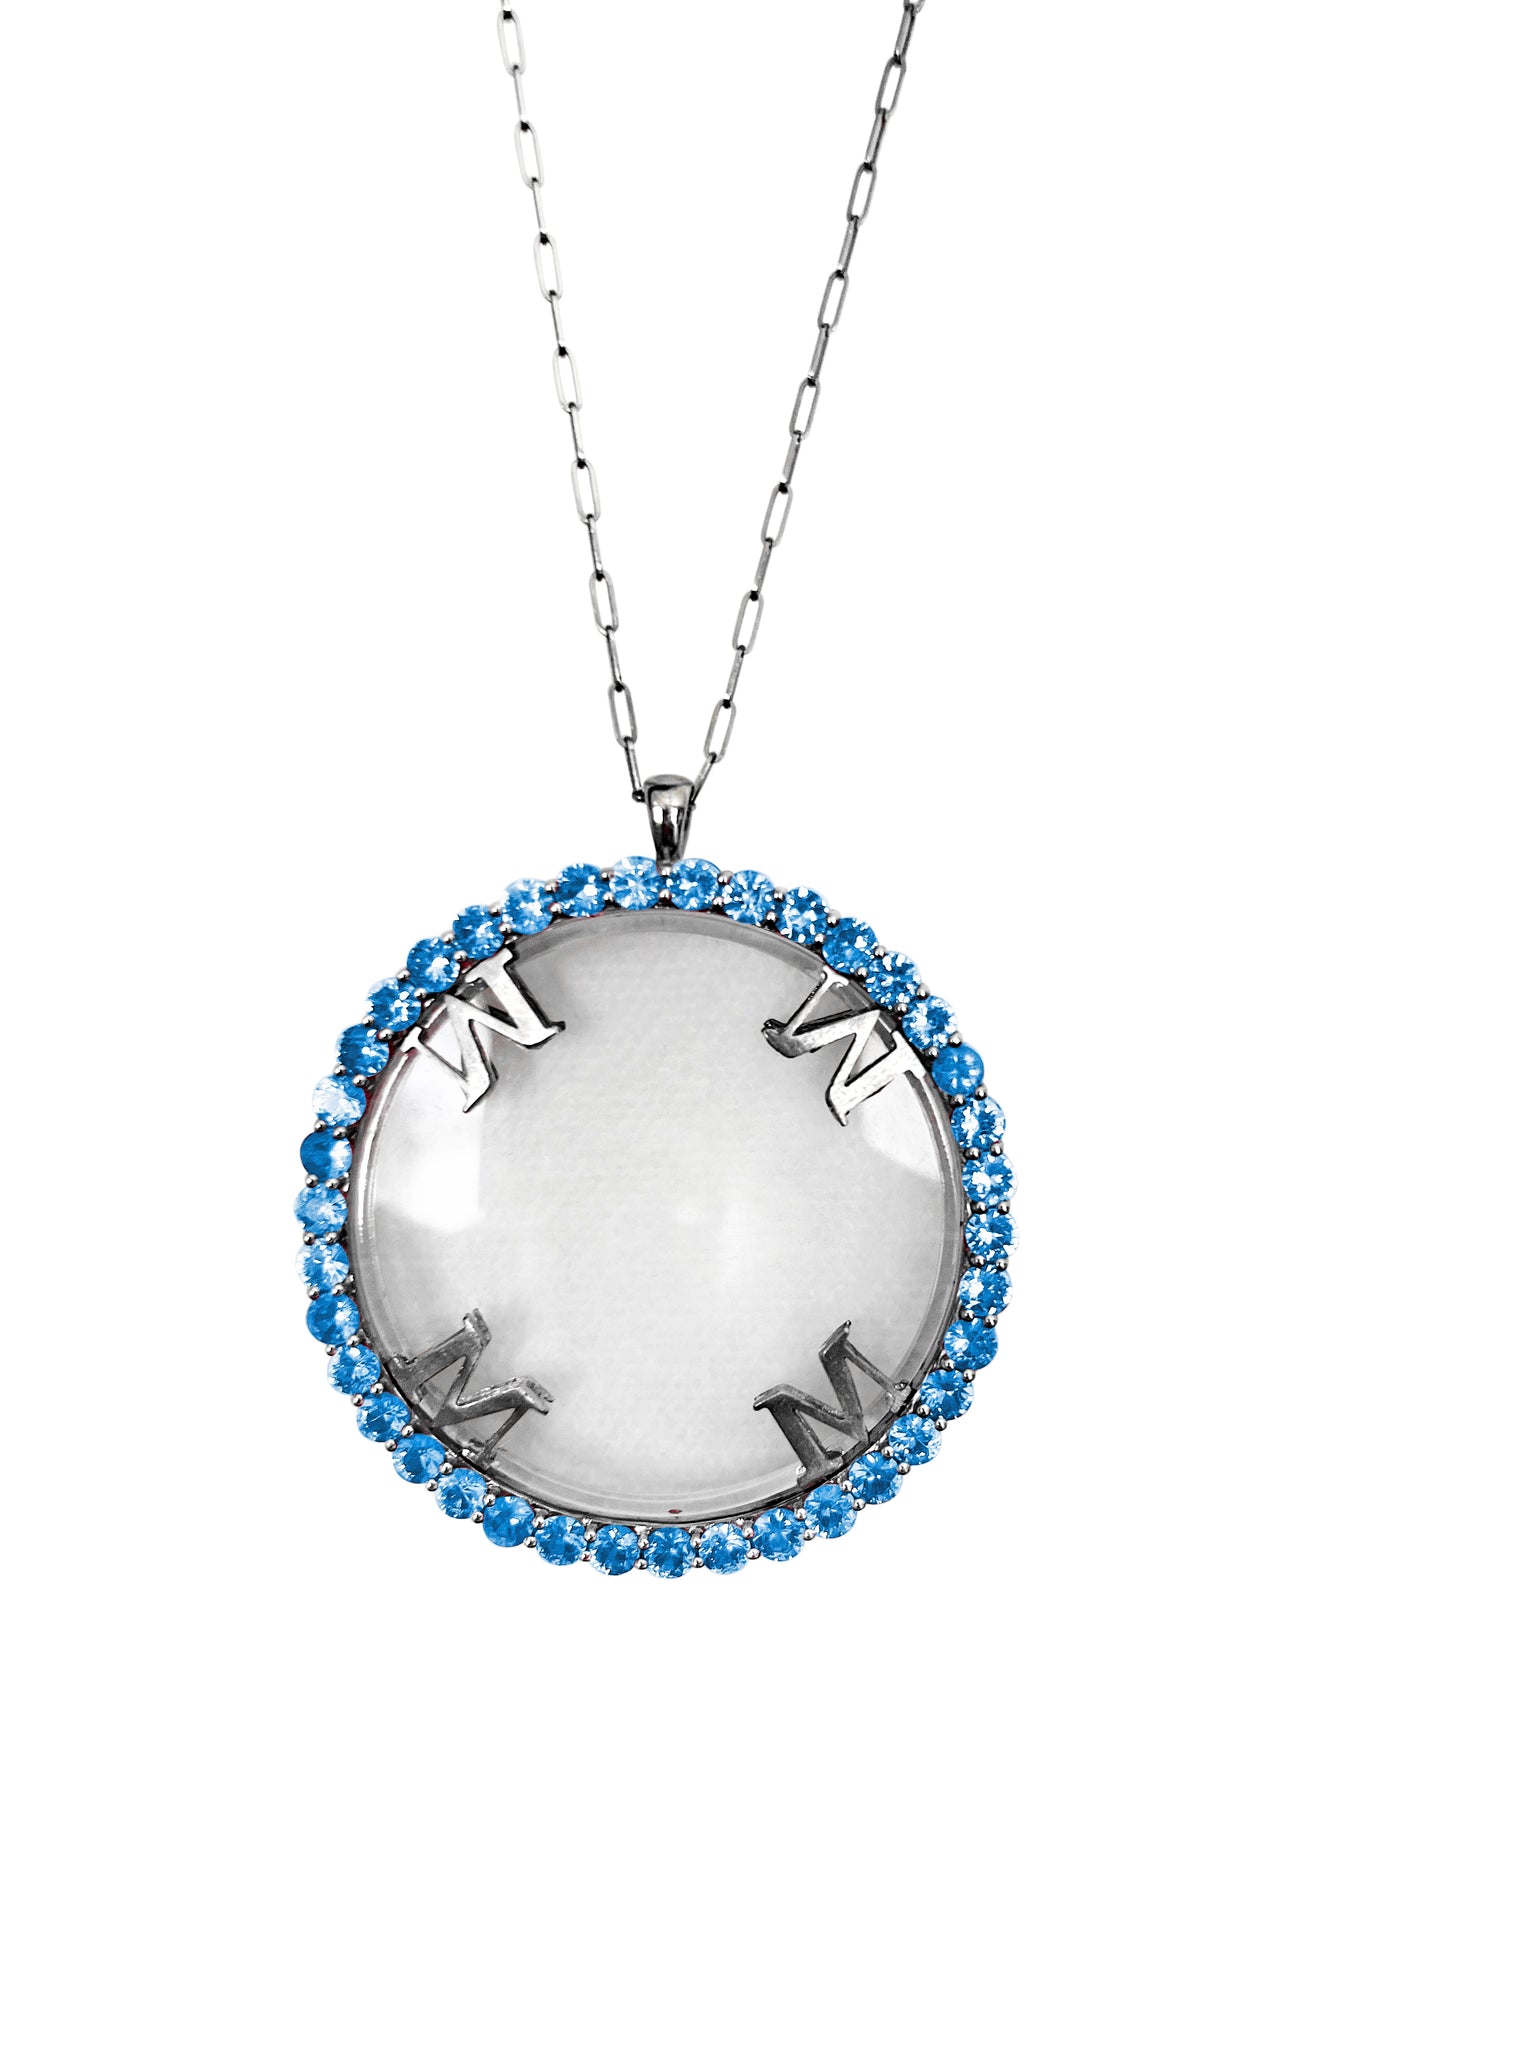 Magnifique Necklace Silver with Blue Sapphire